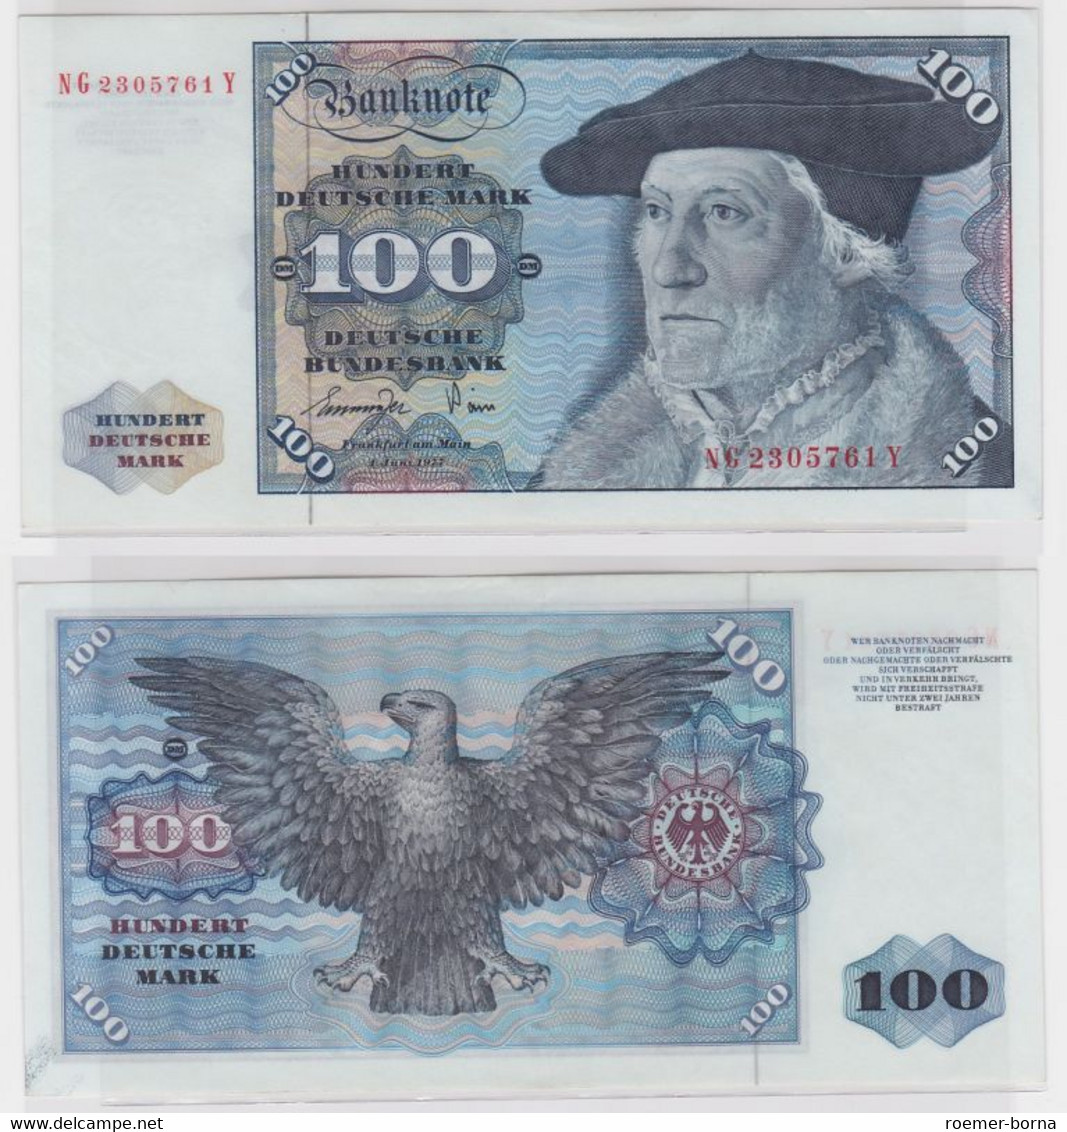 T145157 Banknote 100 DM Deutsche Mark Ro 278a Schein 1.Juni 1977 KN NG 2305761 Y - 100 DM